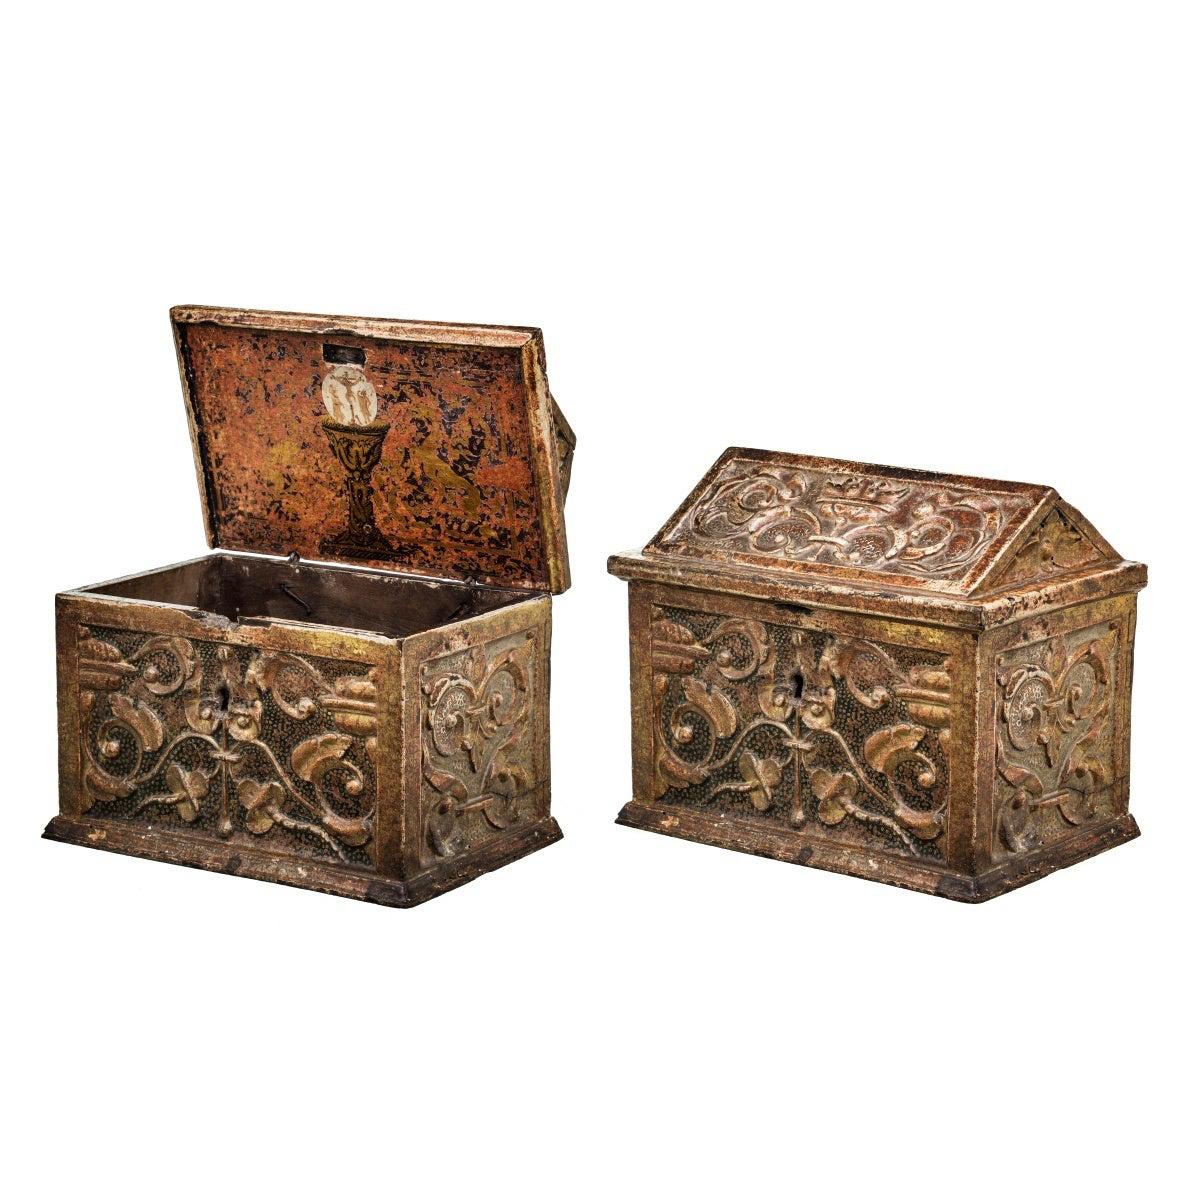 Importante et rare boîte de coffret de rangement espagnole du 15ème siècle 